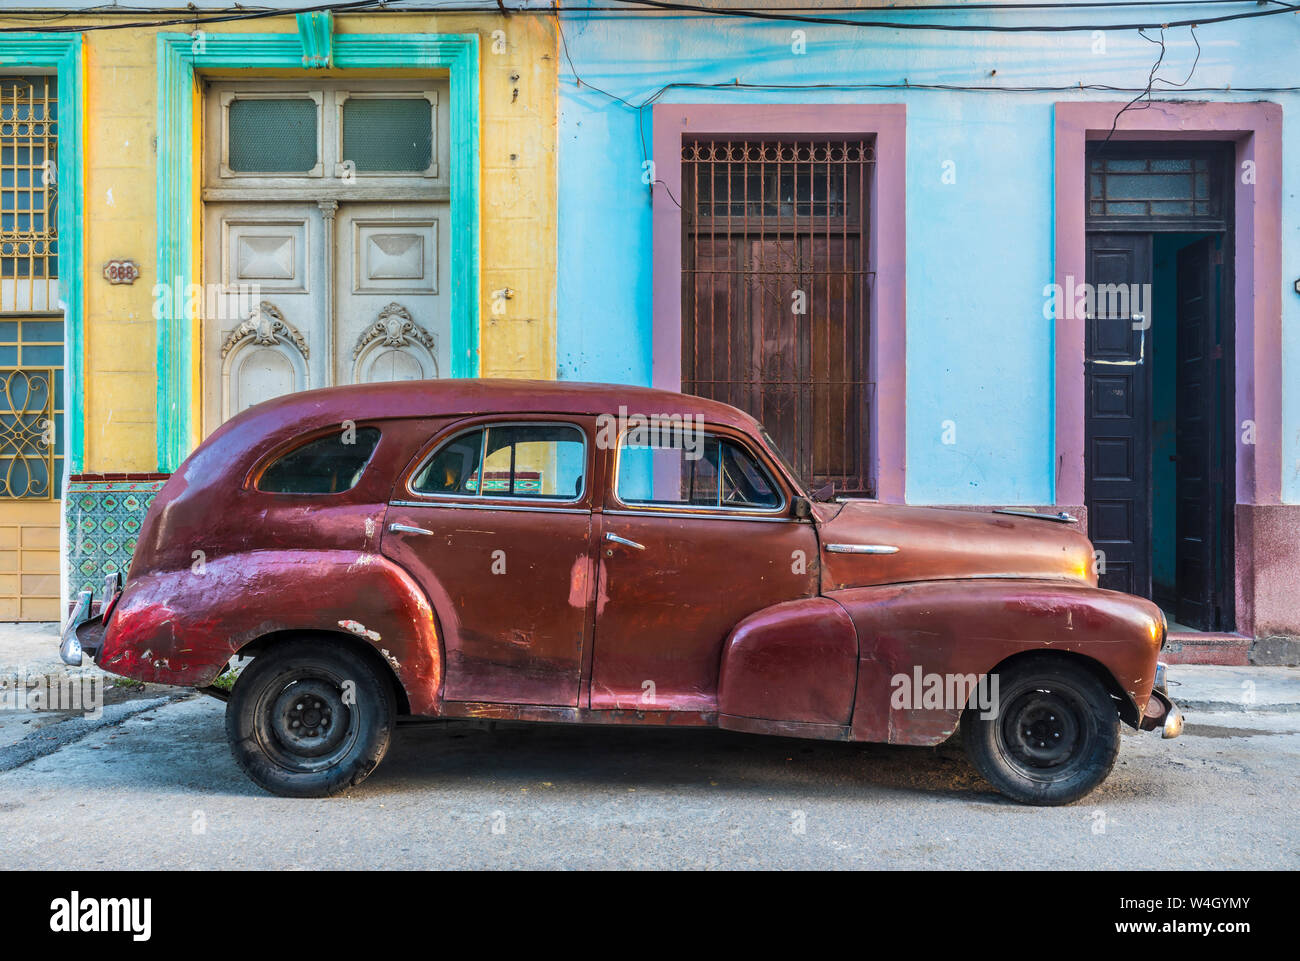 Reparation voiture d'époque, La Havane, Cuba Banque D'Images